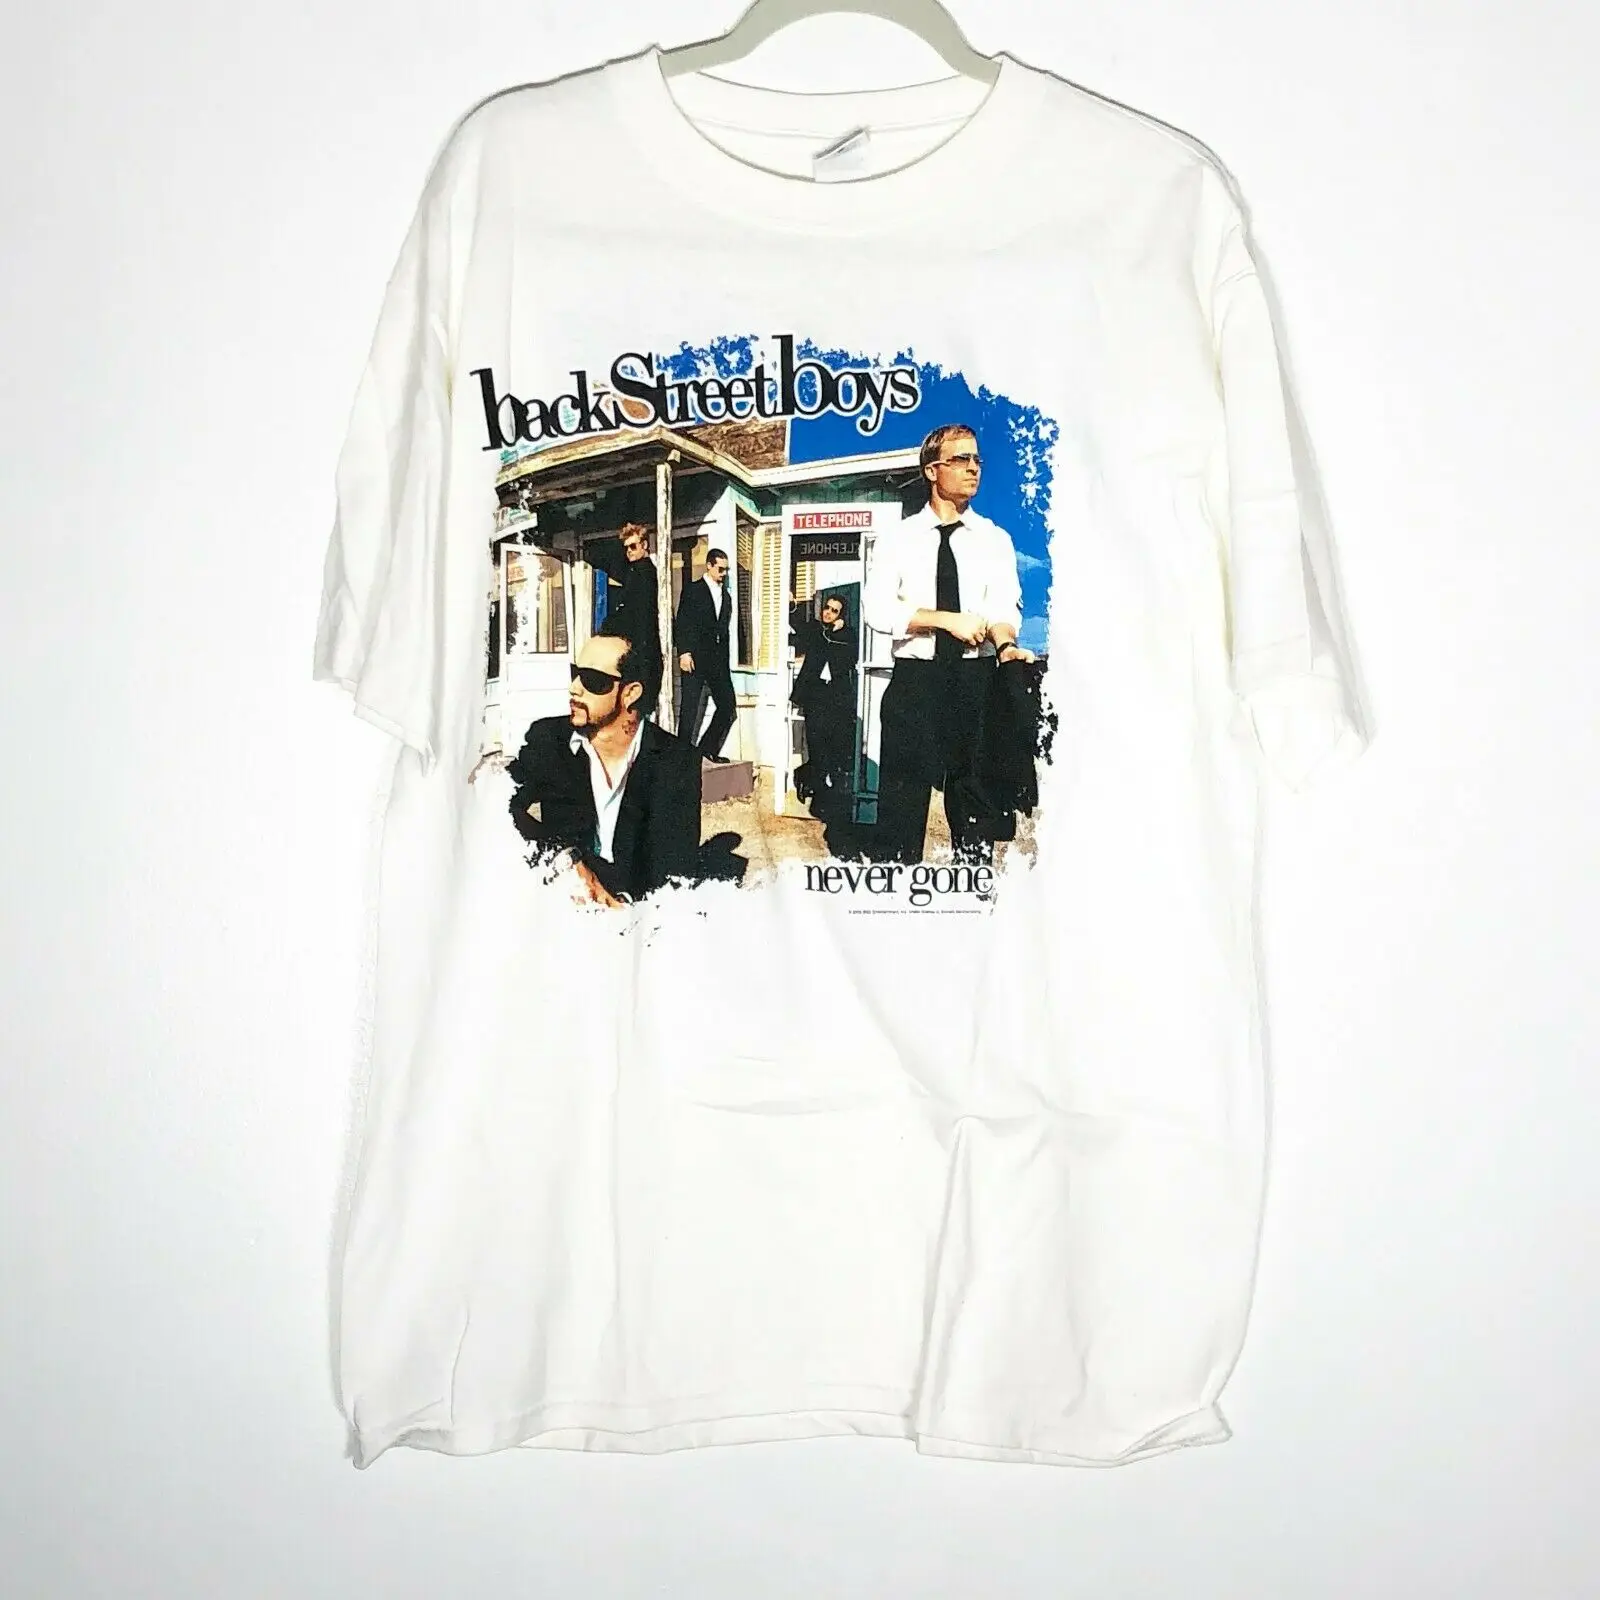 

Backstreet Boys Never Gone Concert Tour T-shirt 2005 Adult Large Male Pre-Cotton Clothing 100% Cotton T Shirt Men 2018 New